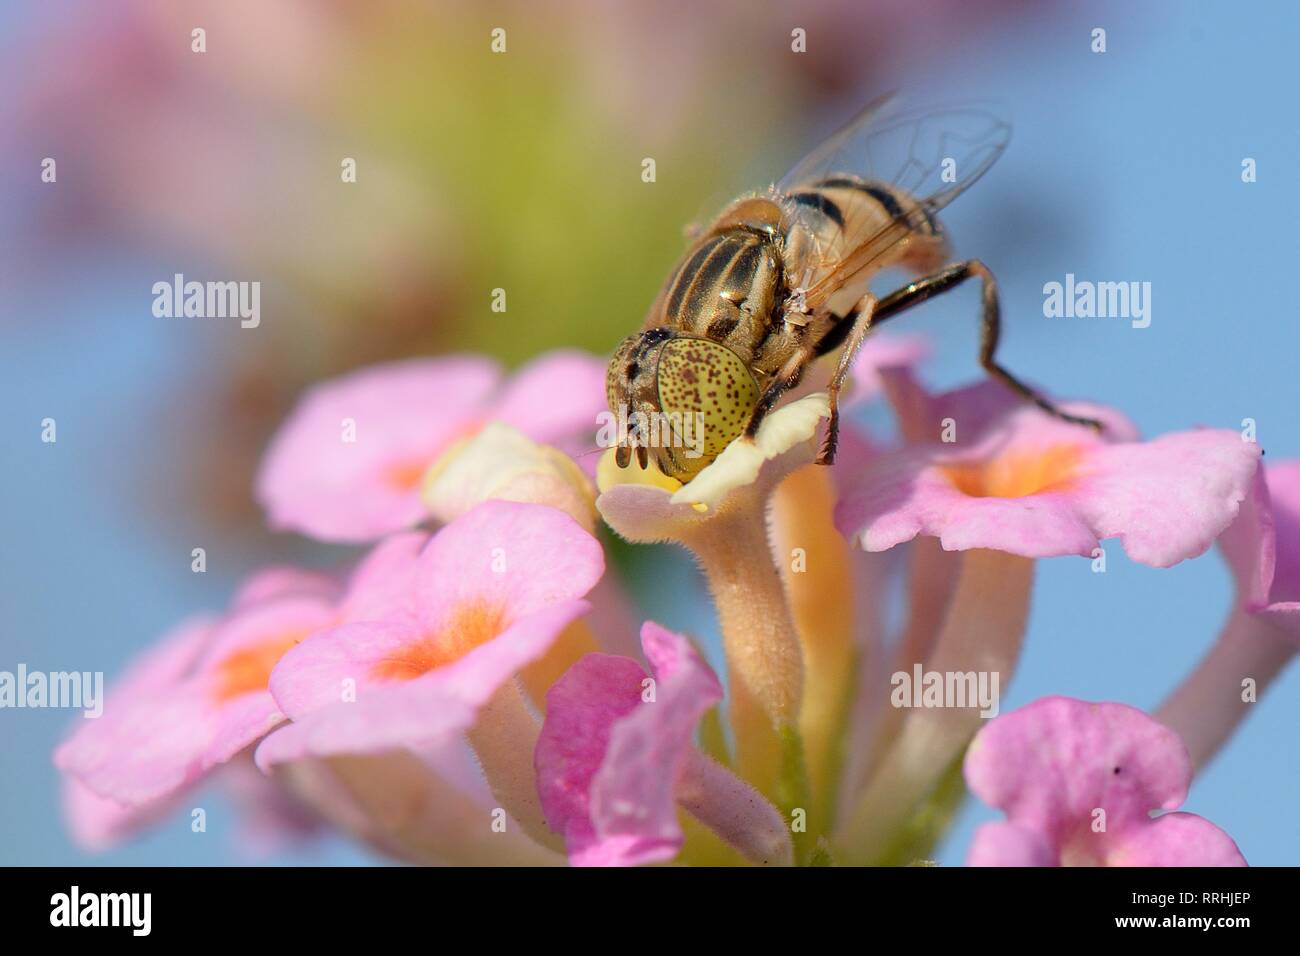 Spotted-eye hoverfly (Eristalinus megacephalus de nectar sur les fleurs) Lantana, Mallorca, Espagne, août. Banque D'Images